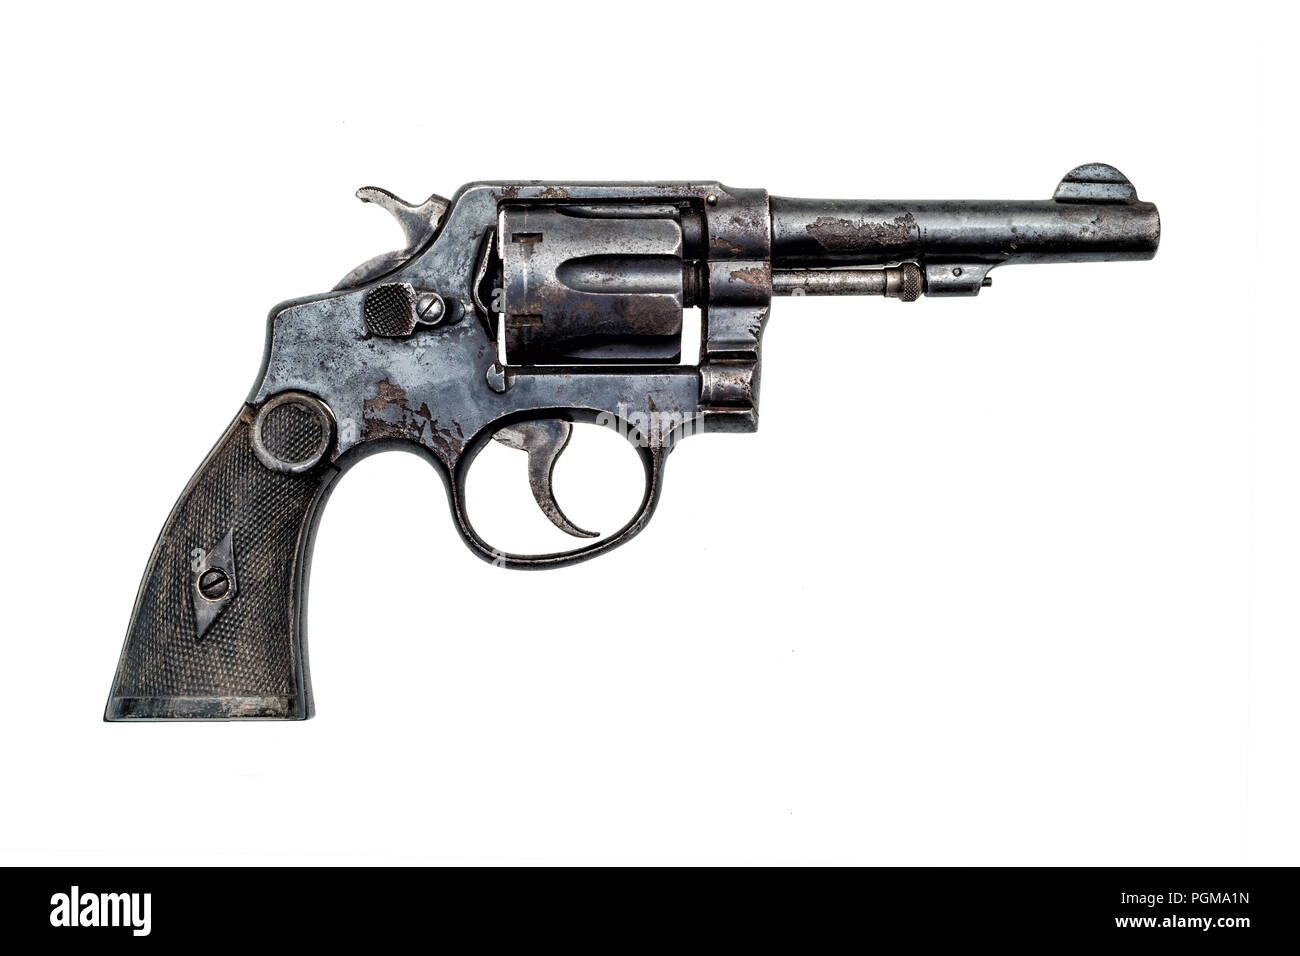 La police militaire vieux revolver rouillé handgun on white background Banque D'Images